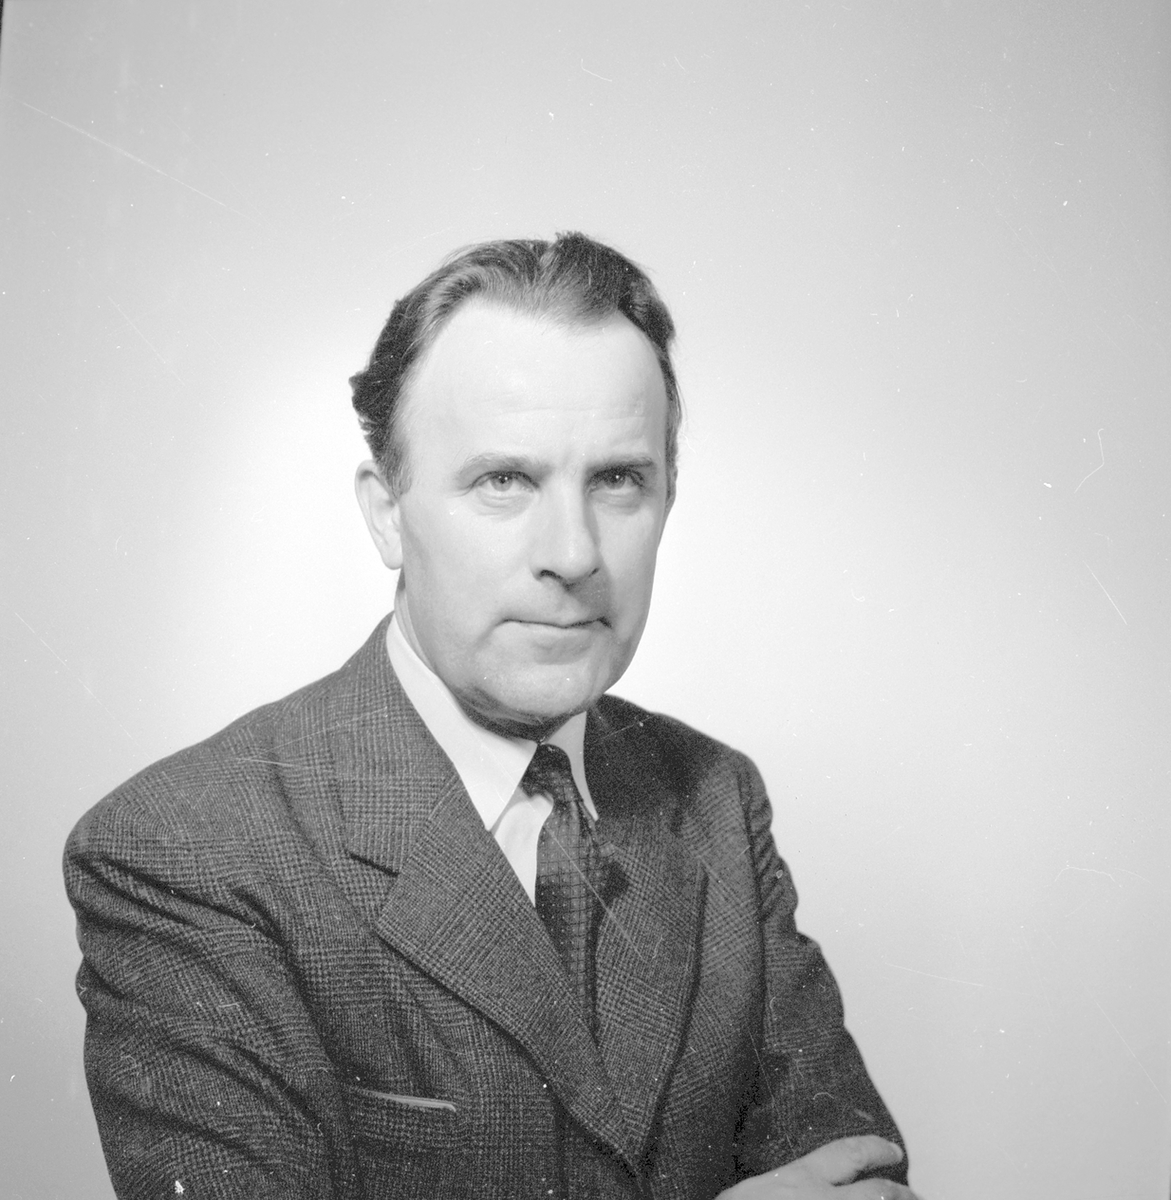 Passfoto av Harrbäck.